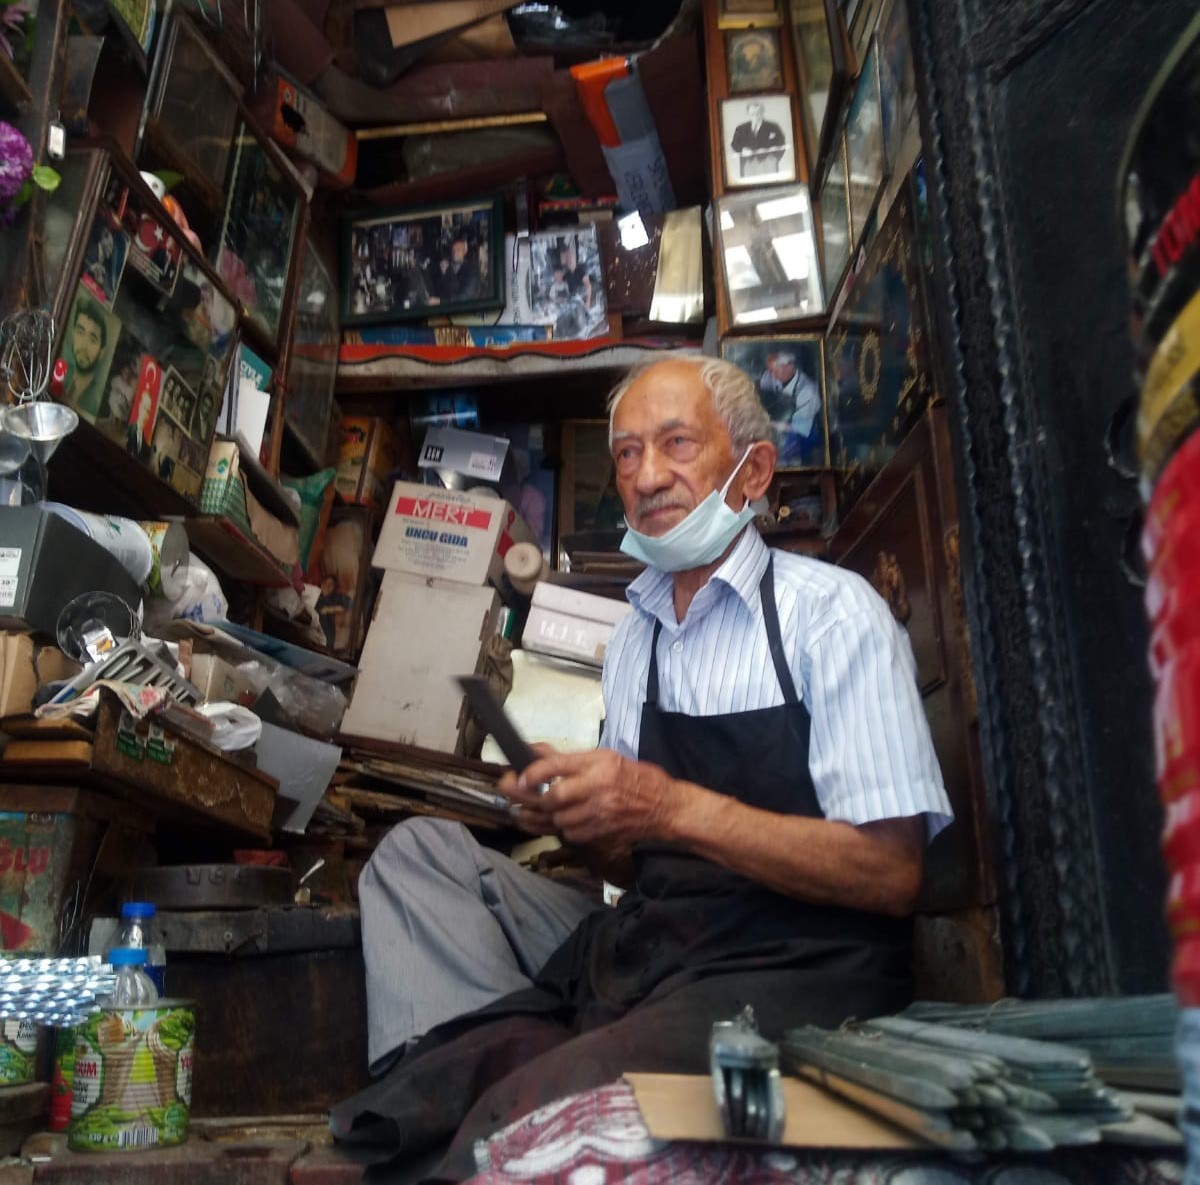 Gaziantepli 65 yıllık teneke ustasının hayatı belgesel oluyor #gaziantep